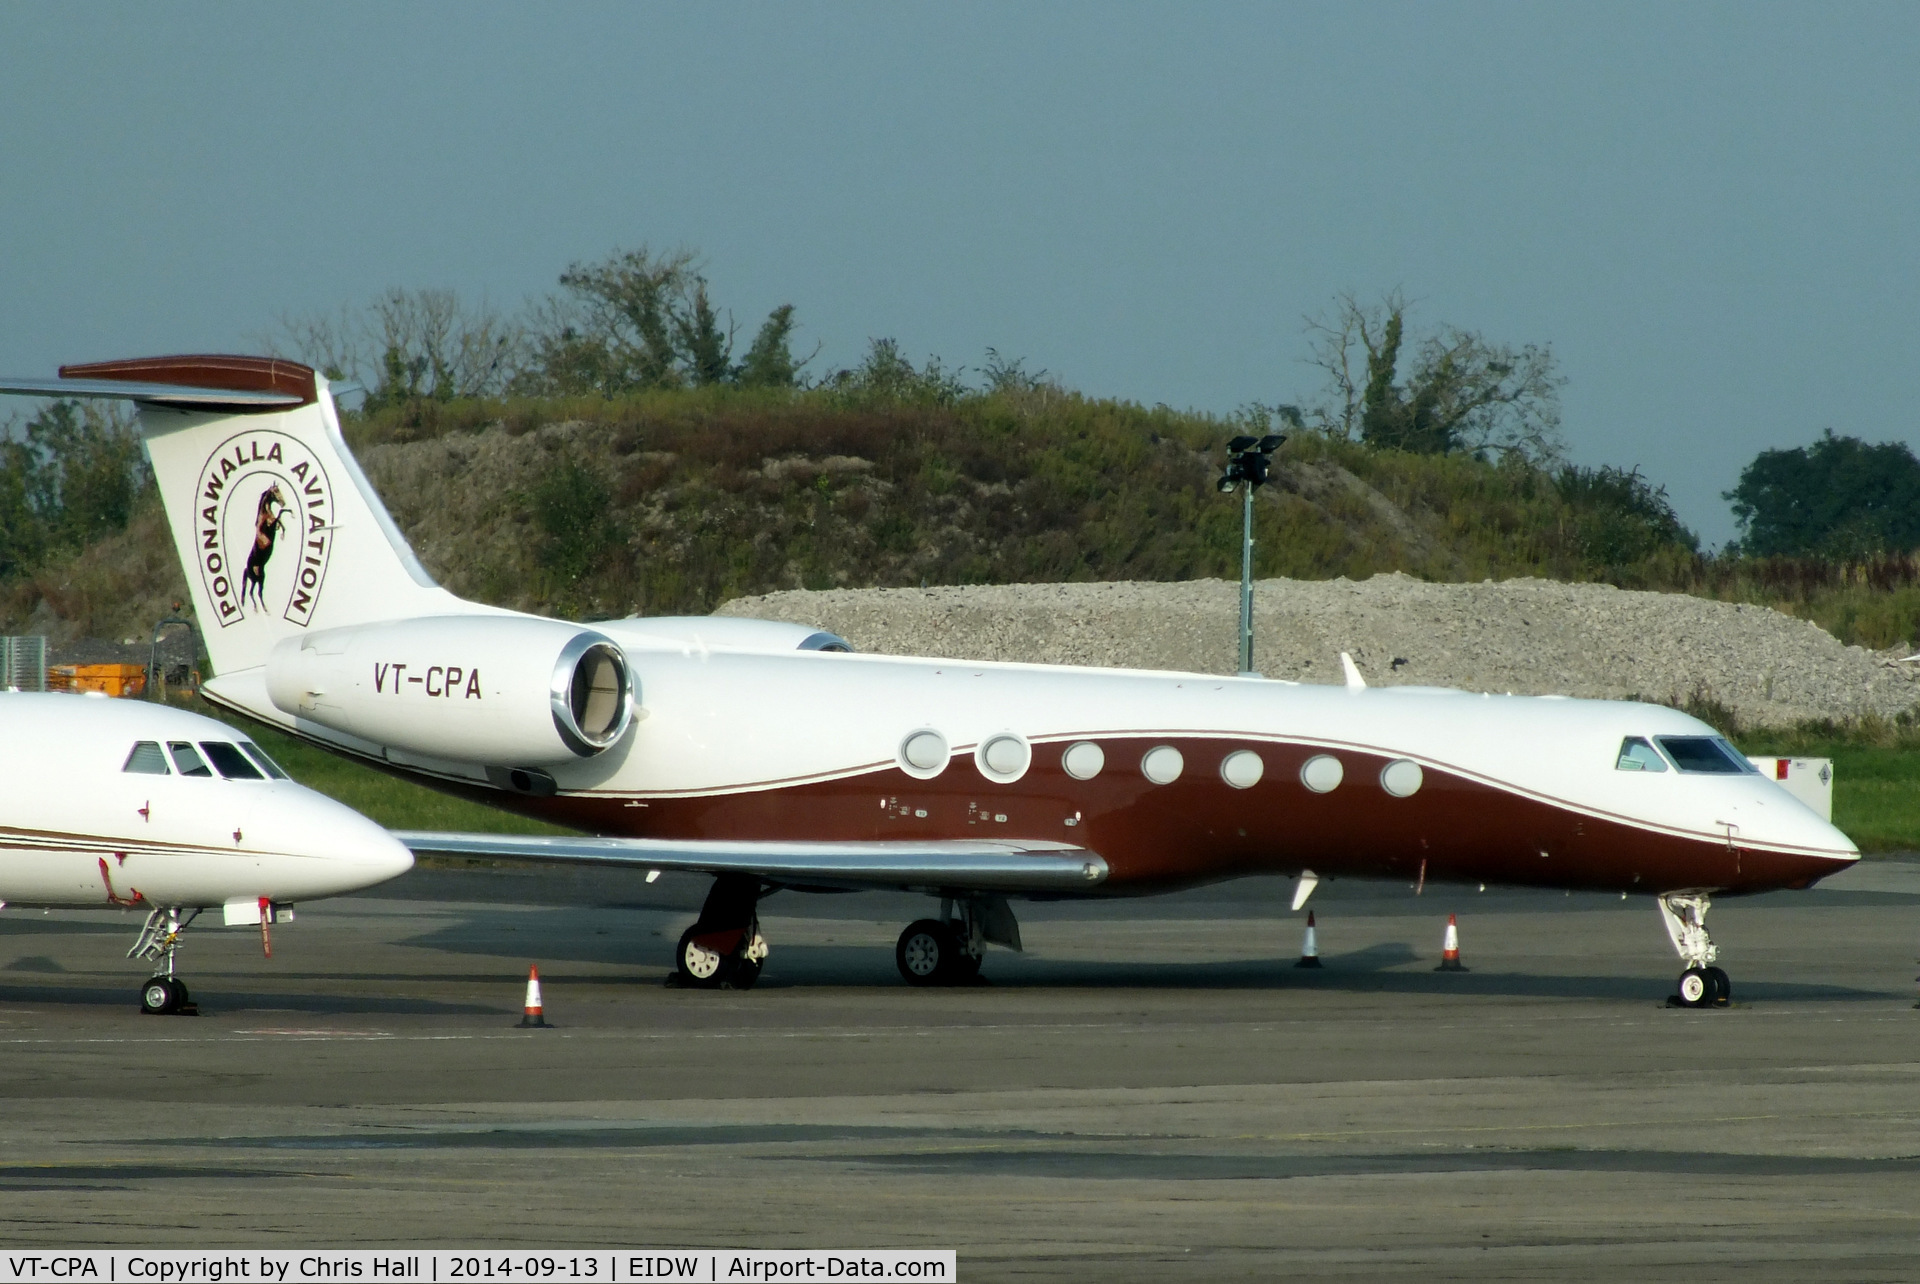 VT-CPA, 2013 Gulfstream Aerospace V-SP G550 C/N 5427, Poonawalla Aviation